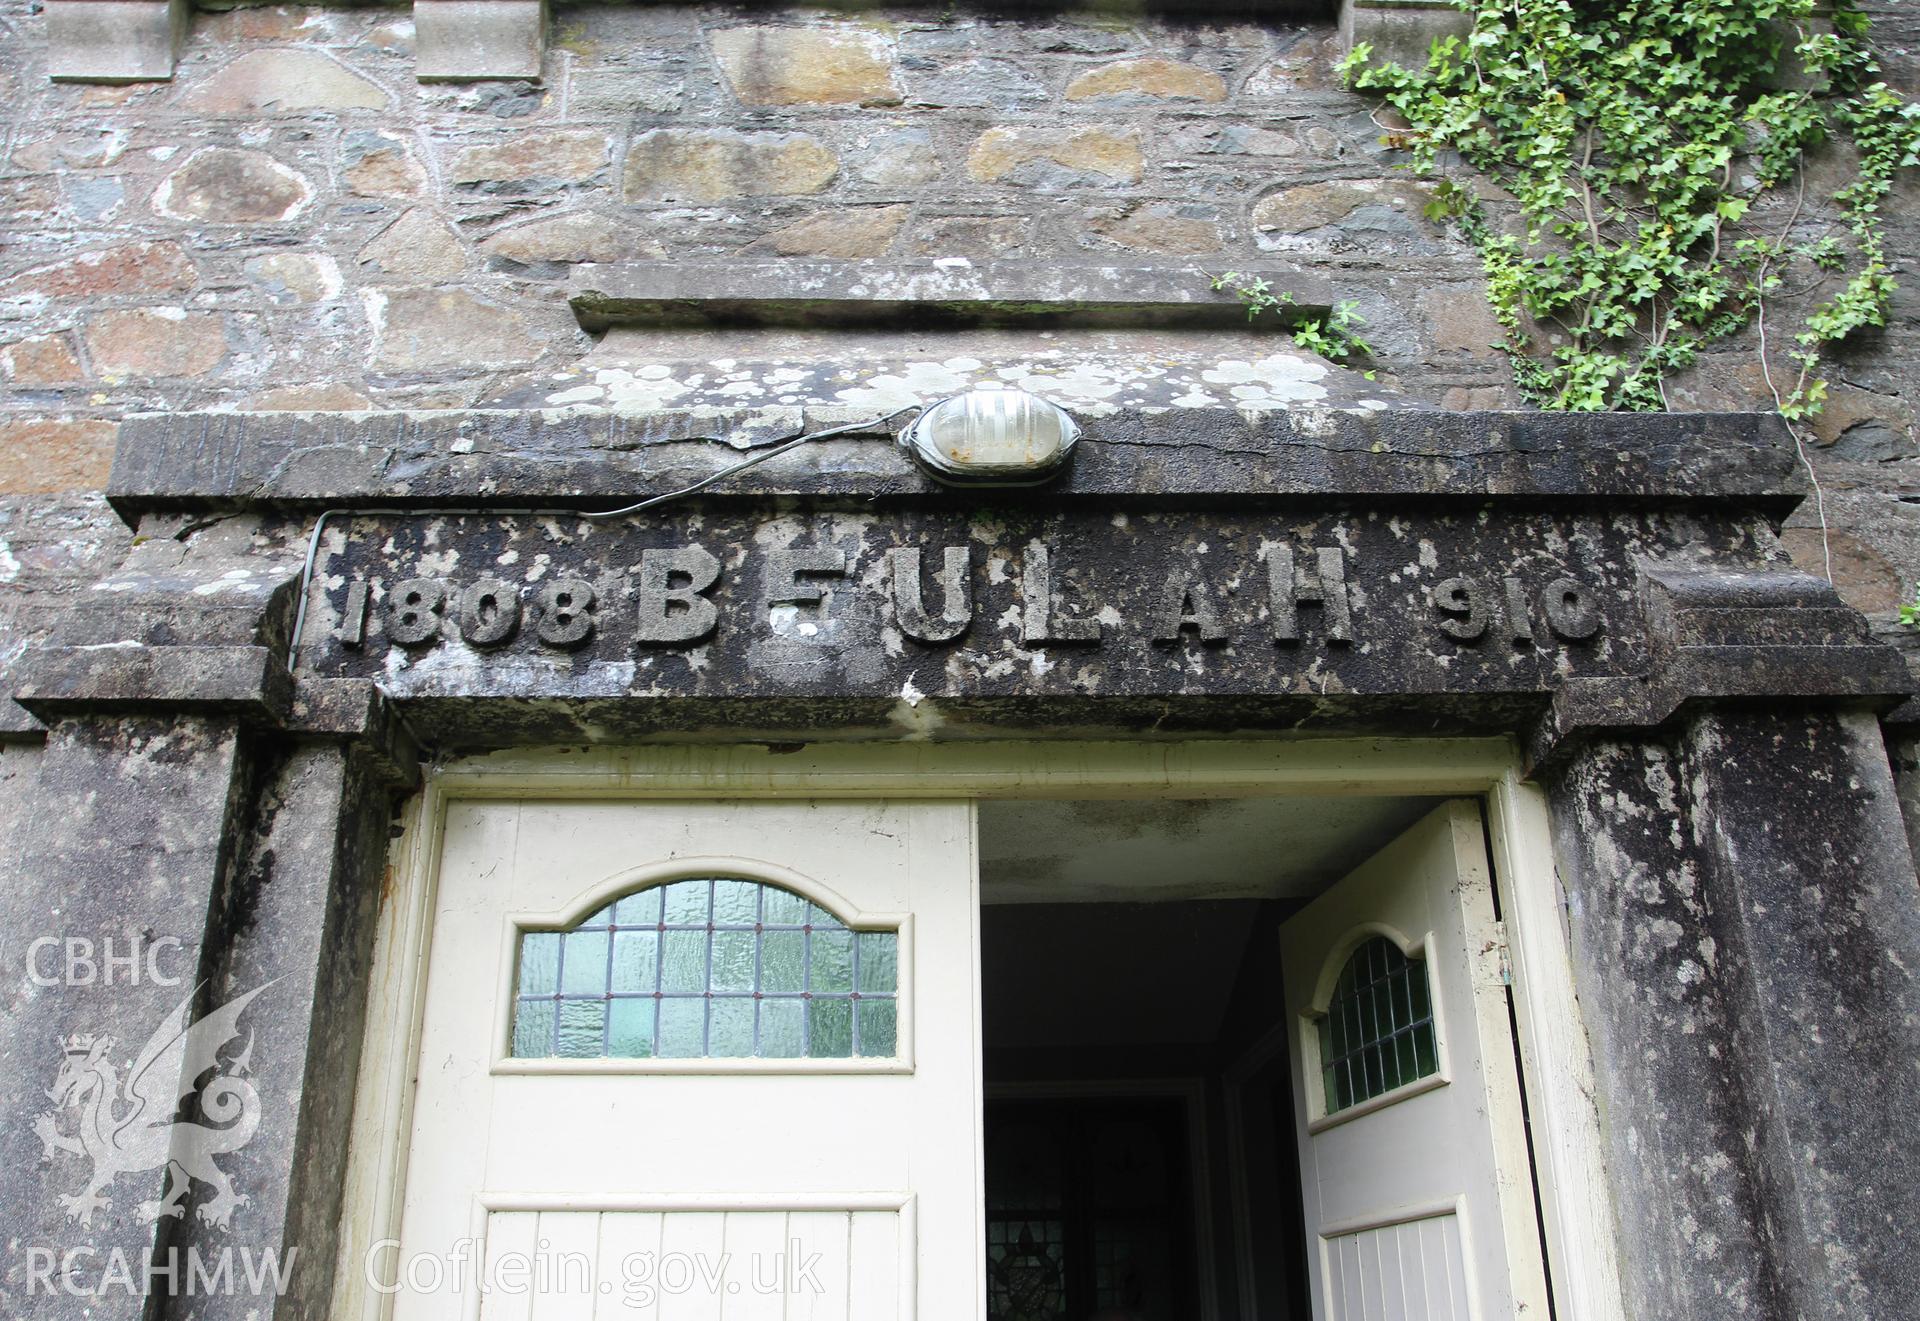 Detail of name above facade door